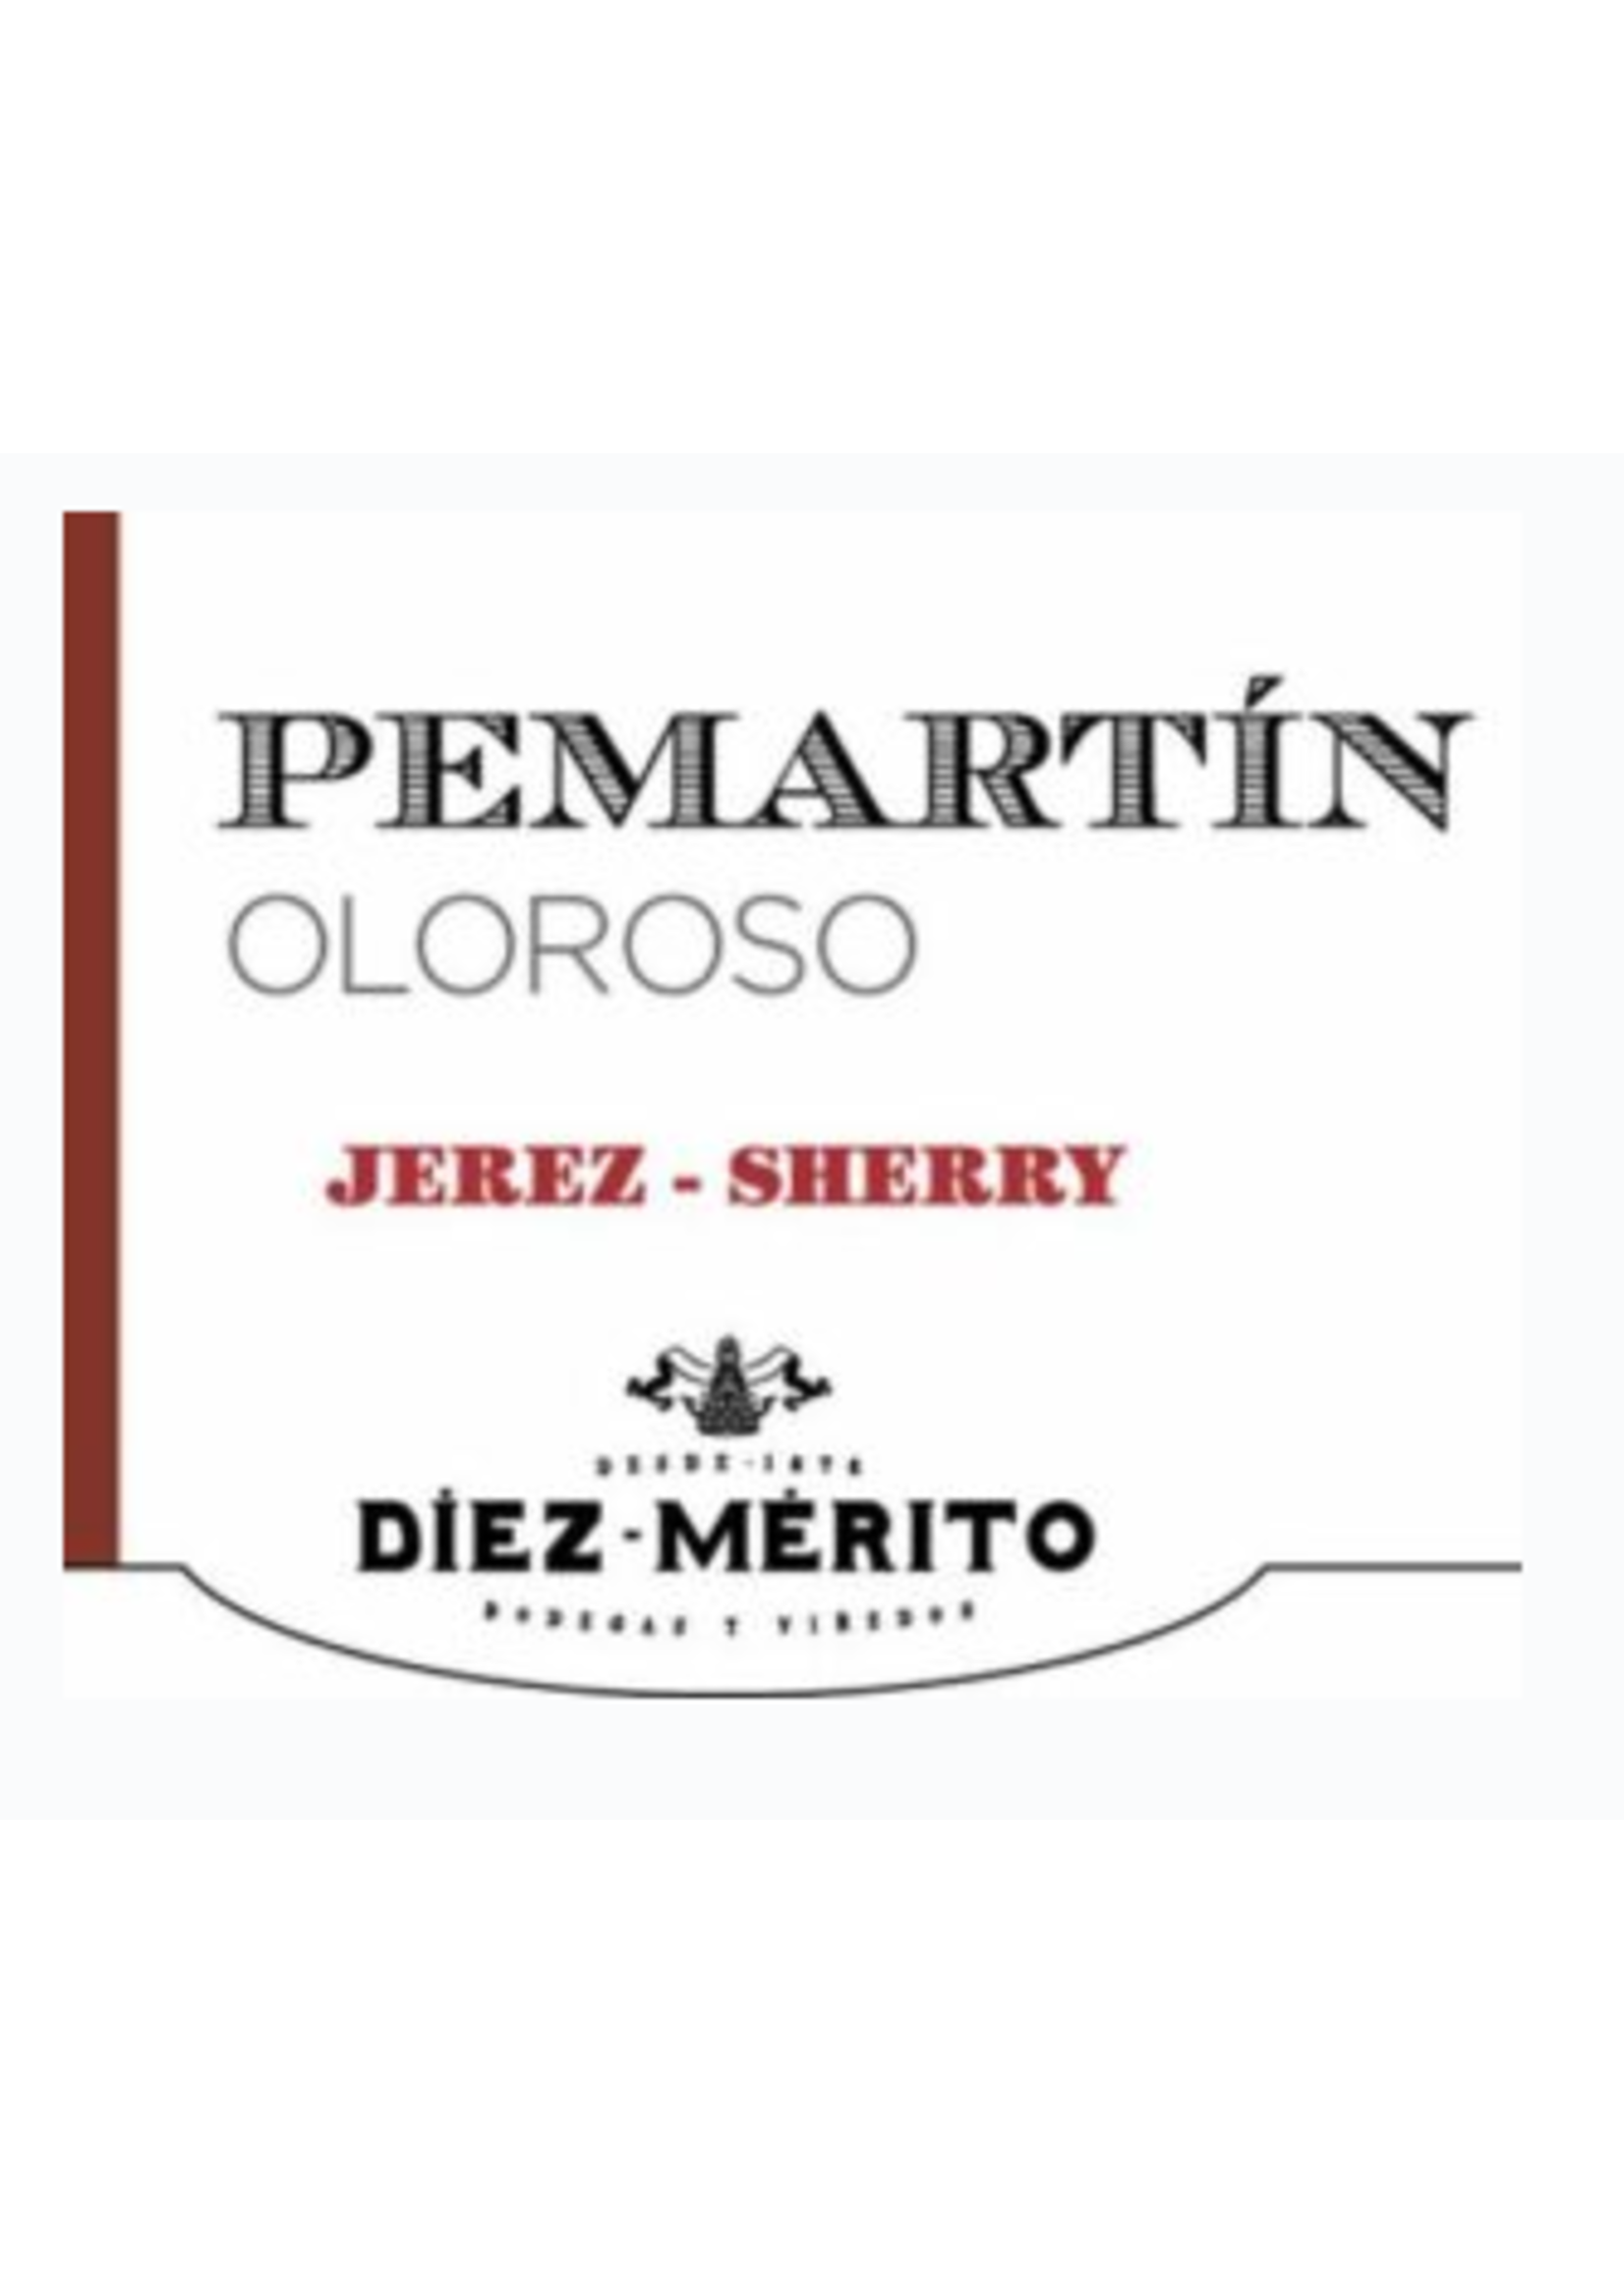 Sherry- Diez-Merito Permatin- Oloroso